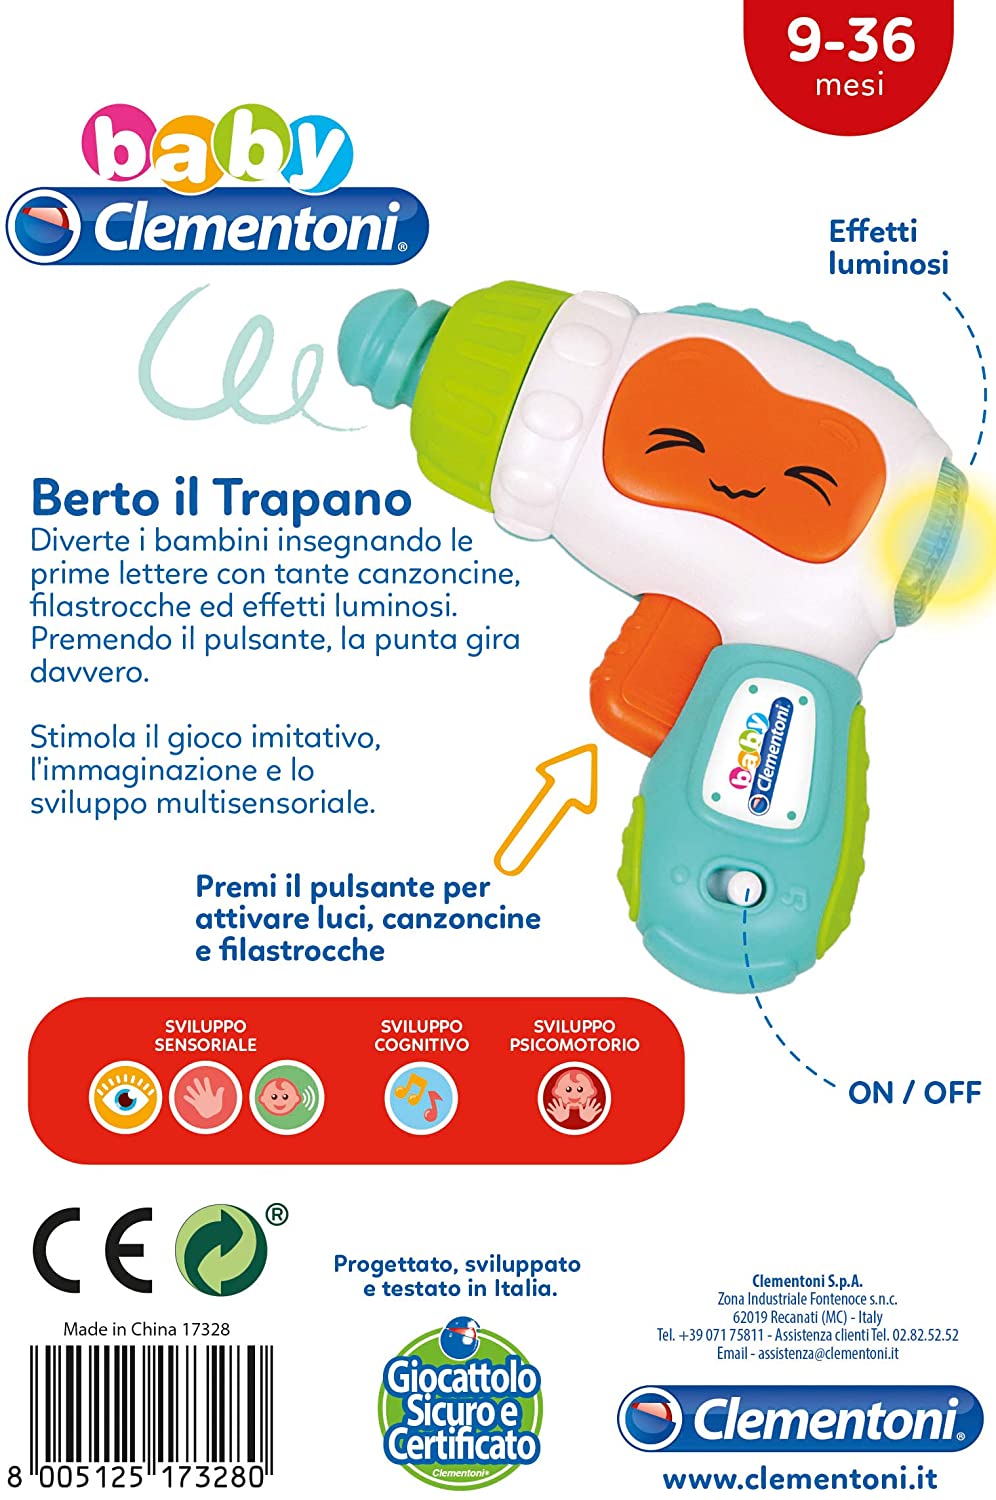 Baby Clementoni - Berto il Trapano - Italian Edition